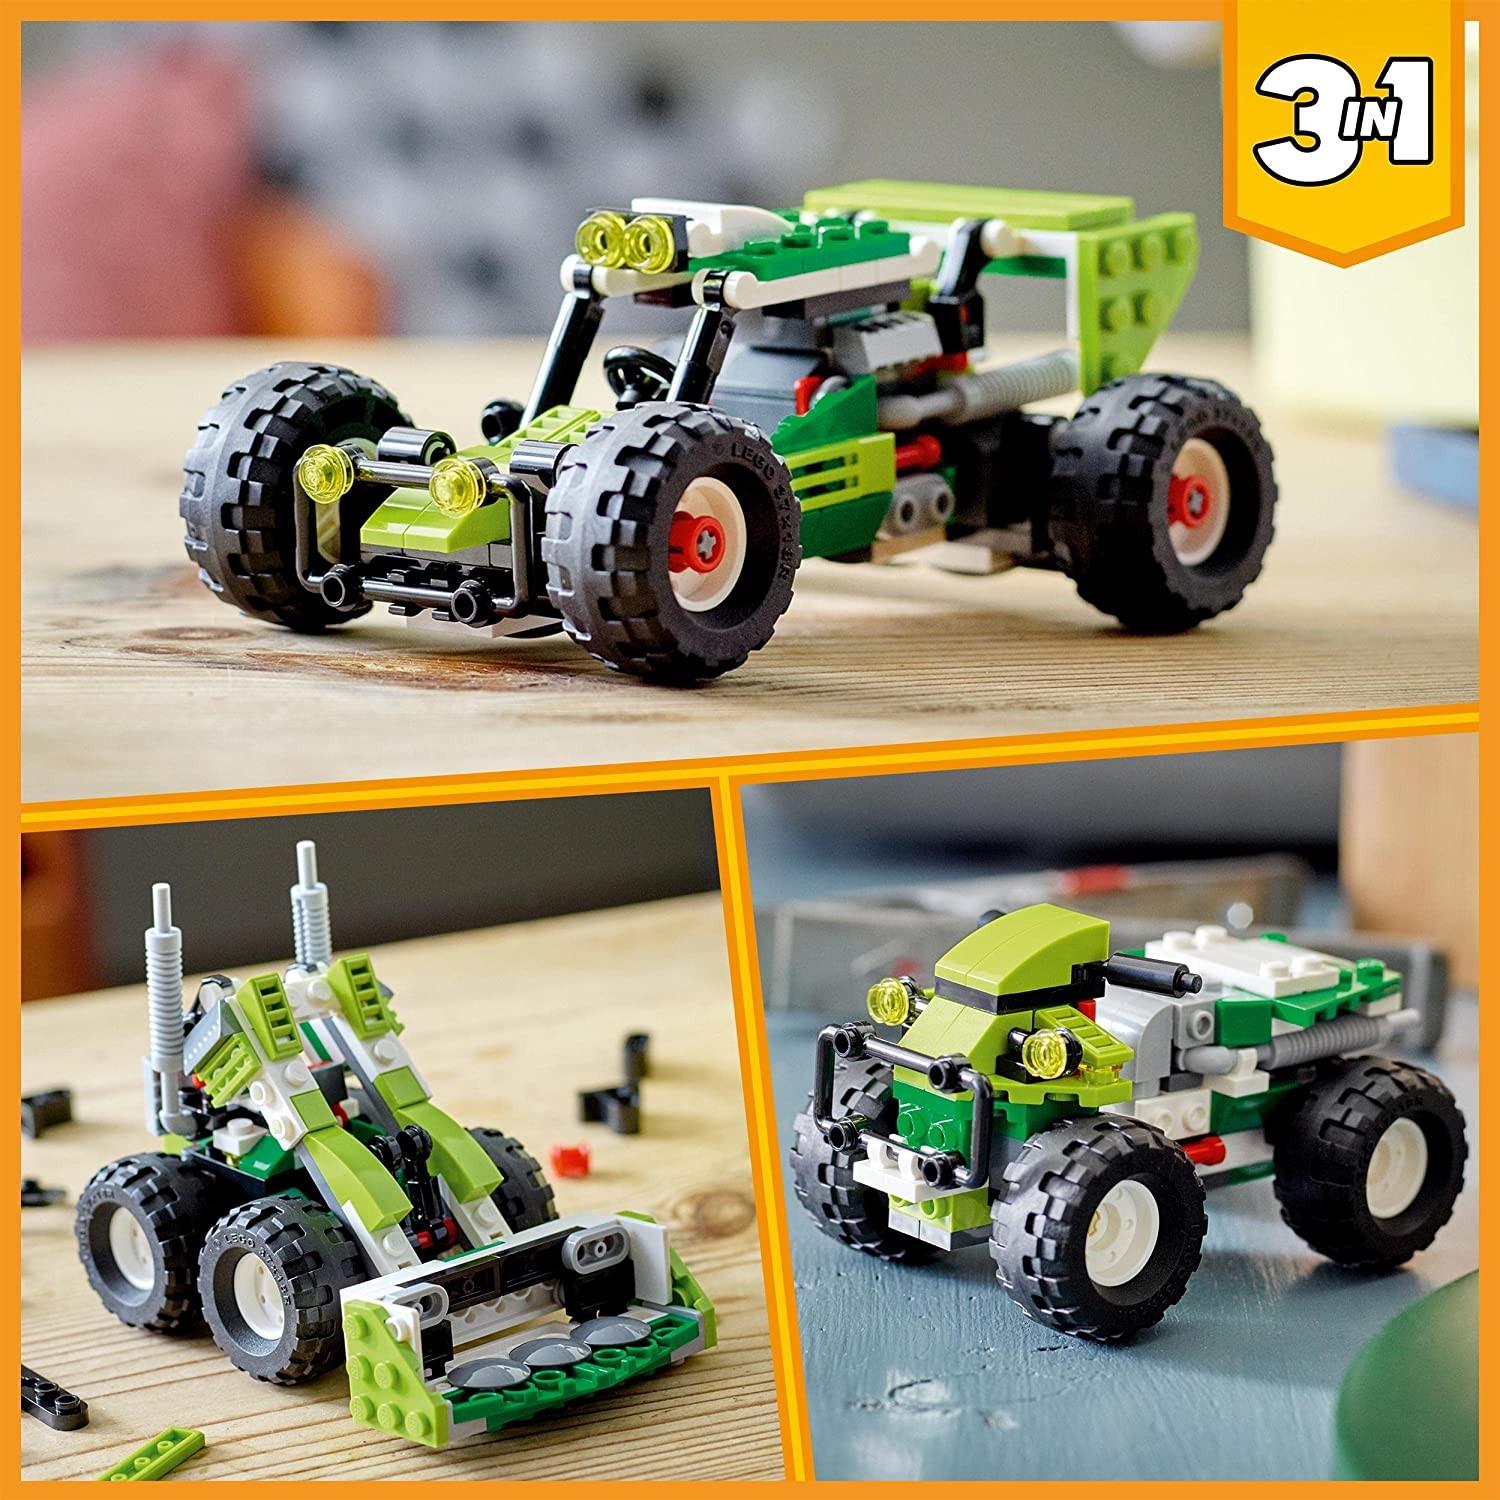 Acheter all-terrain buggy Lego Bricks others - Lego Le ...